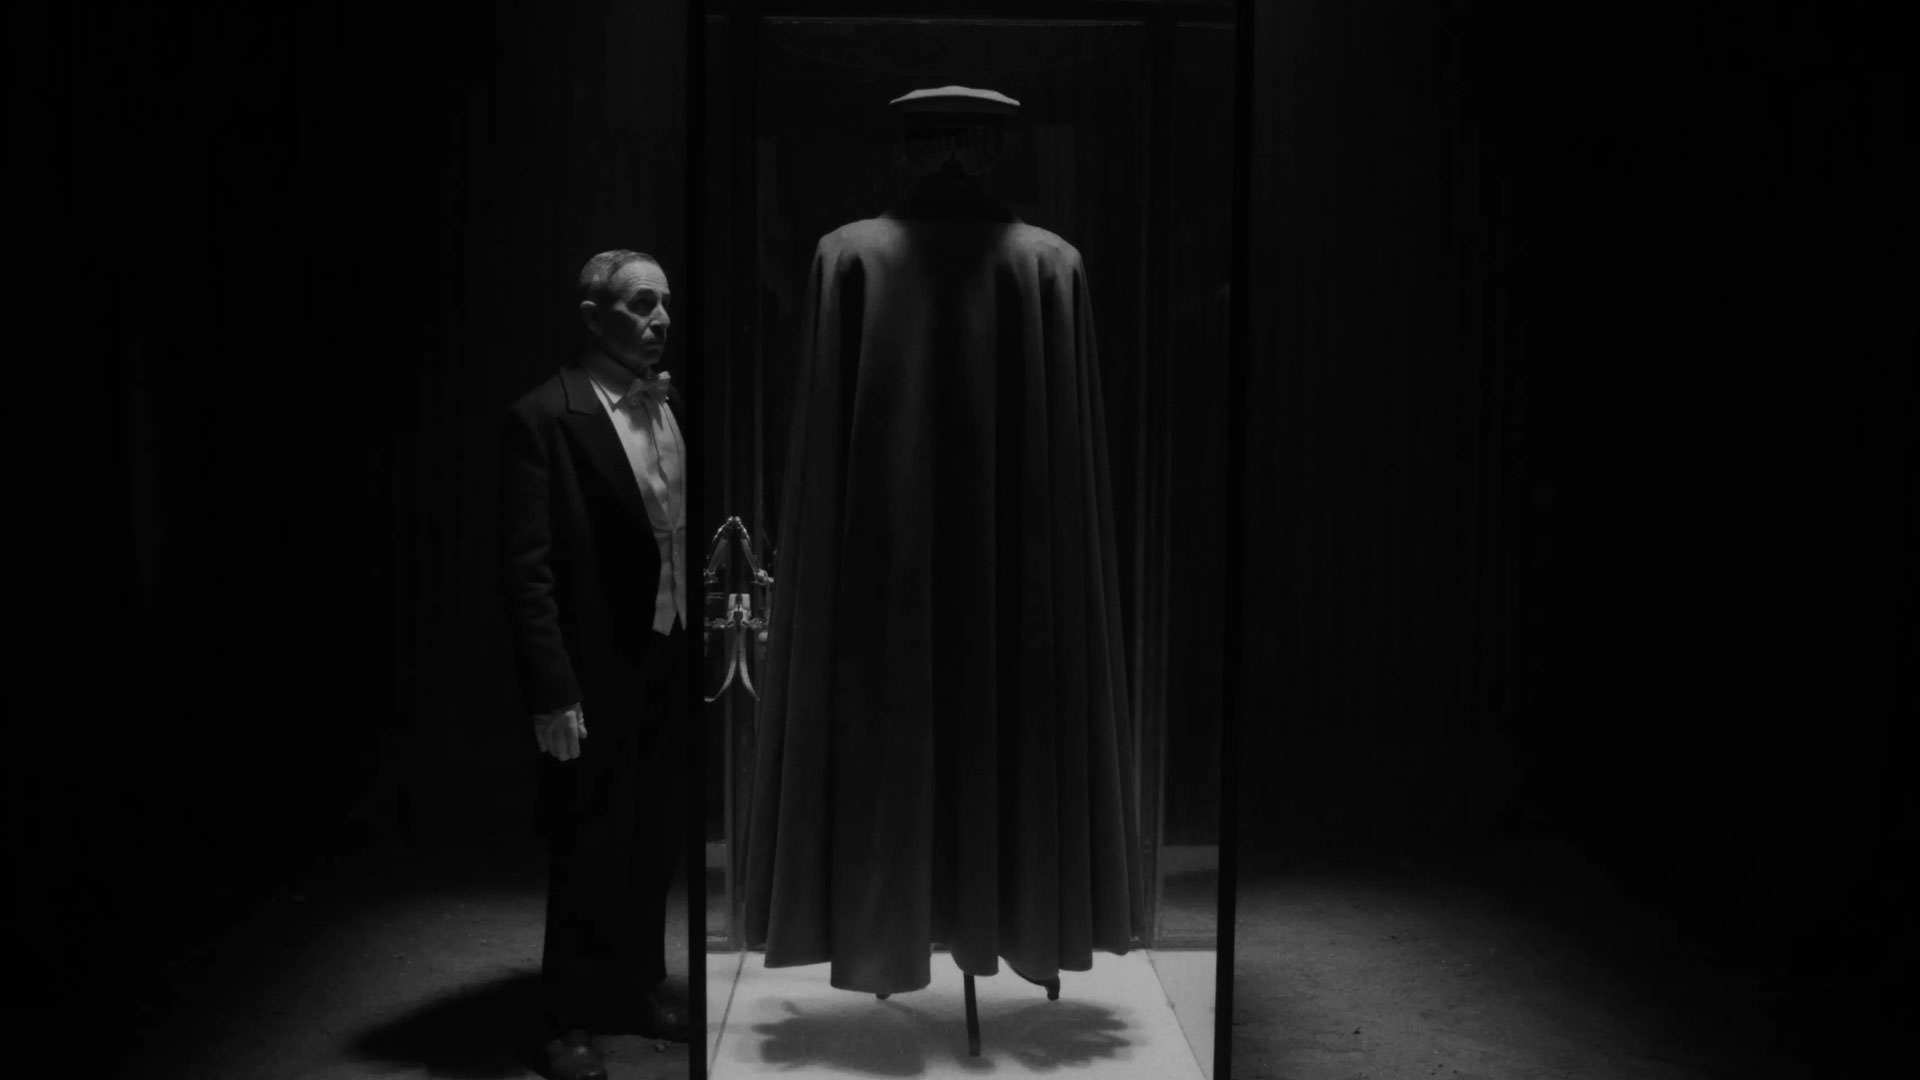 آلفردو کاسترو با لباس پیش‌خدمت کنار یک محفظه‌ی حاوی یک‌دست لباس و شنل نظامی ایستاده است در نمایی سیاه و سفید از فیلم کنت به کارگردانی پابلو لارائین